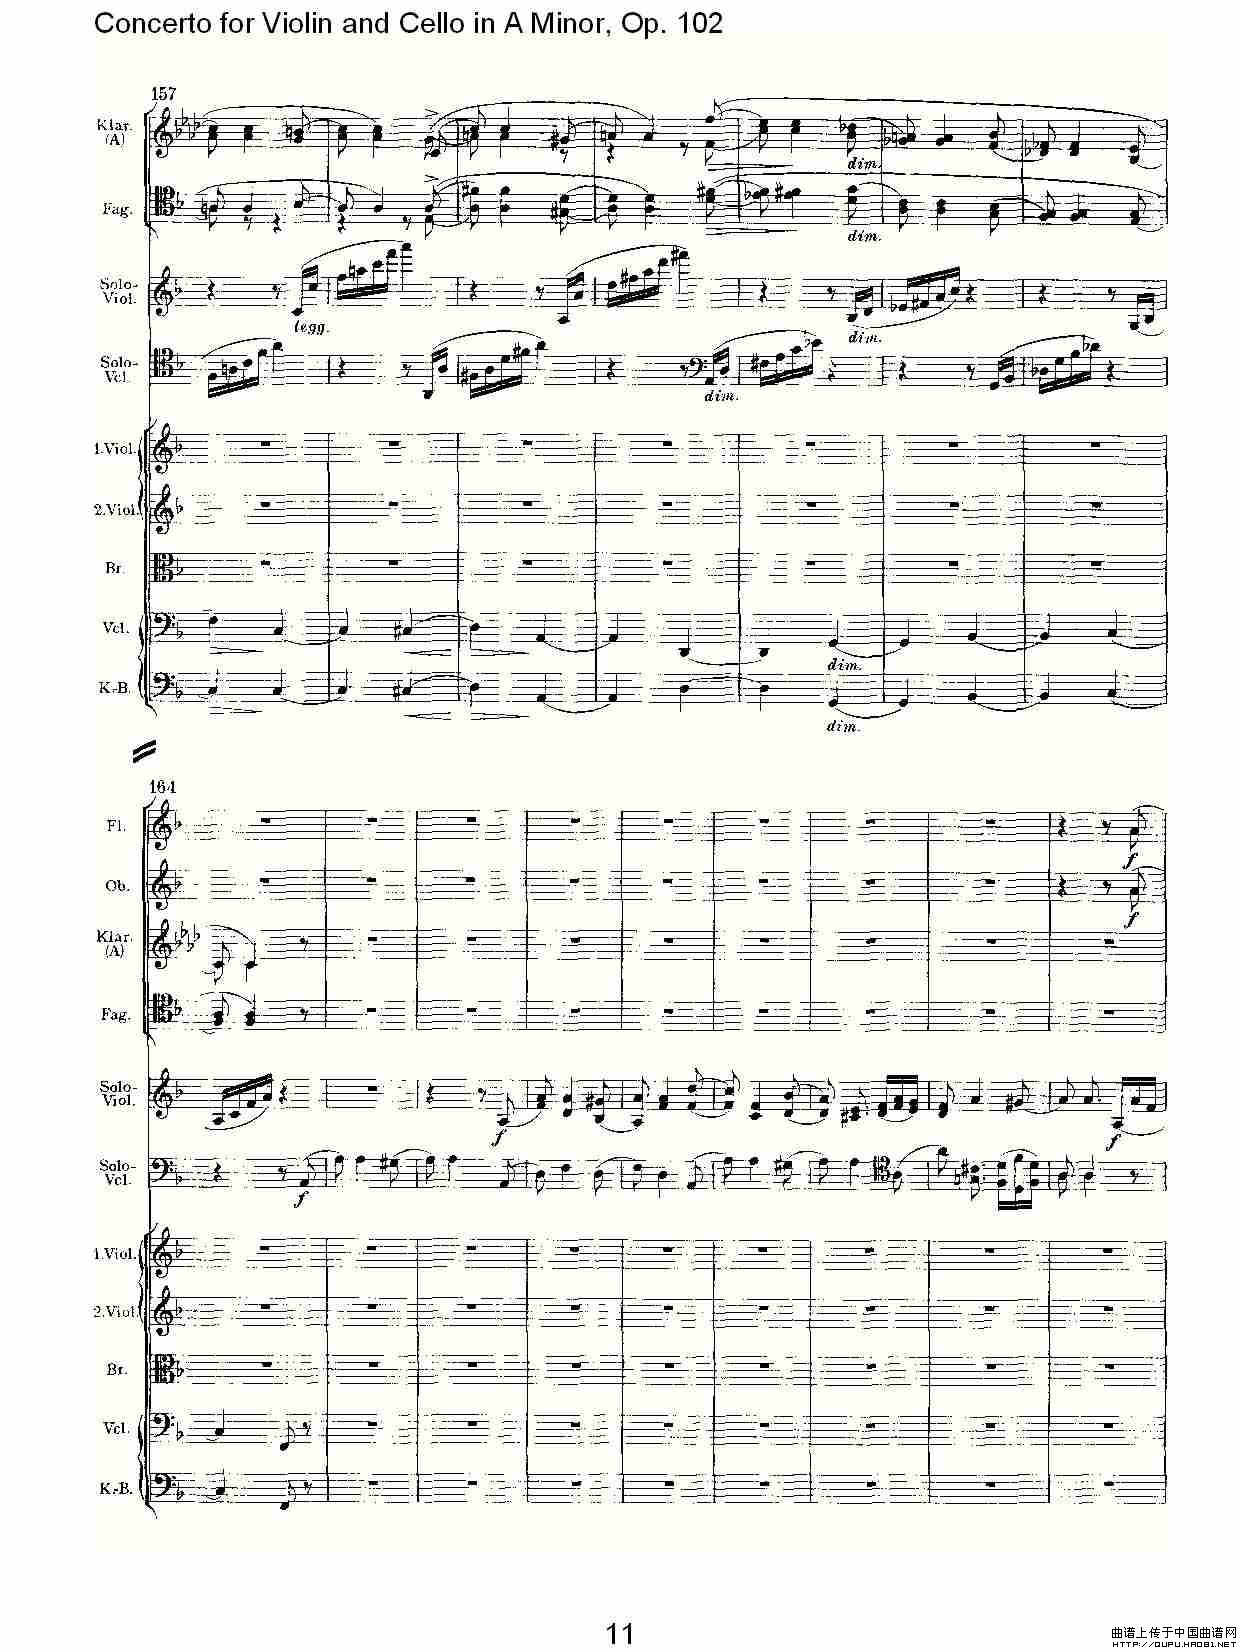 A小调小提琴与大提琴协奏曲, Op.102第三乐章